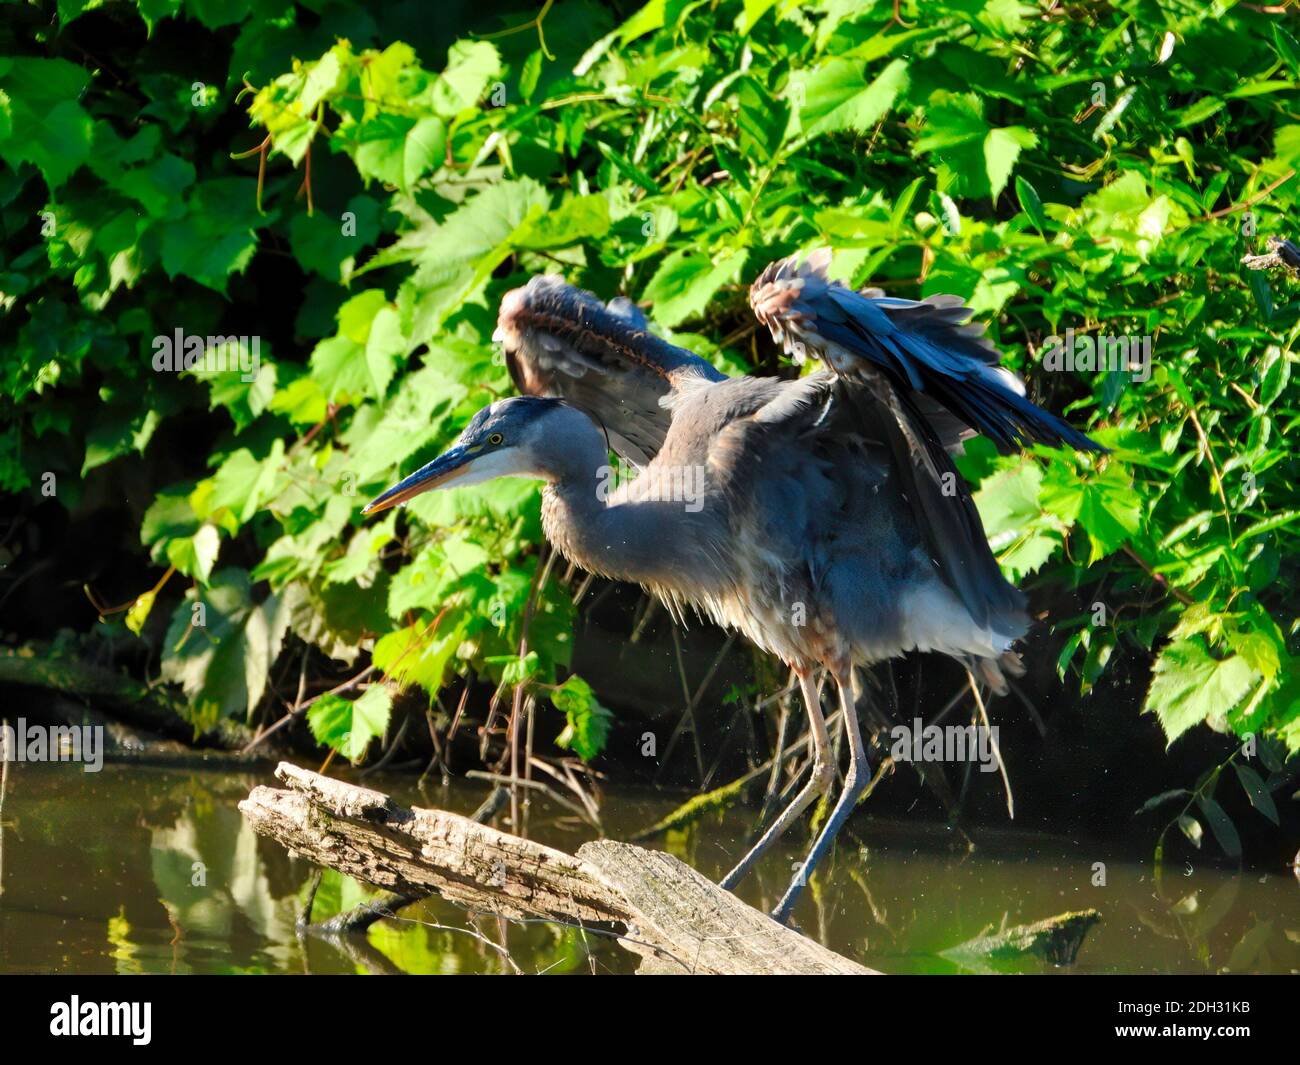 Blue Heron Bird streckt Flügel beim Balancing auf tot gehockt Baumzweig im Teich mit grüner Laub Umgebung Stockfoto